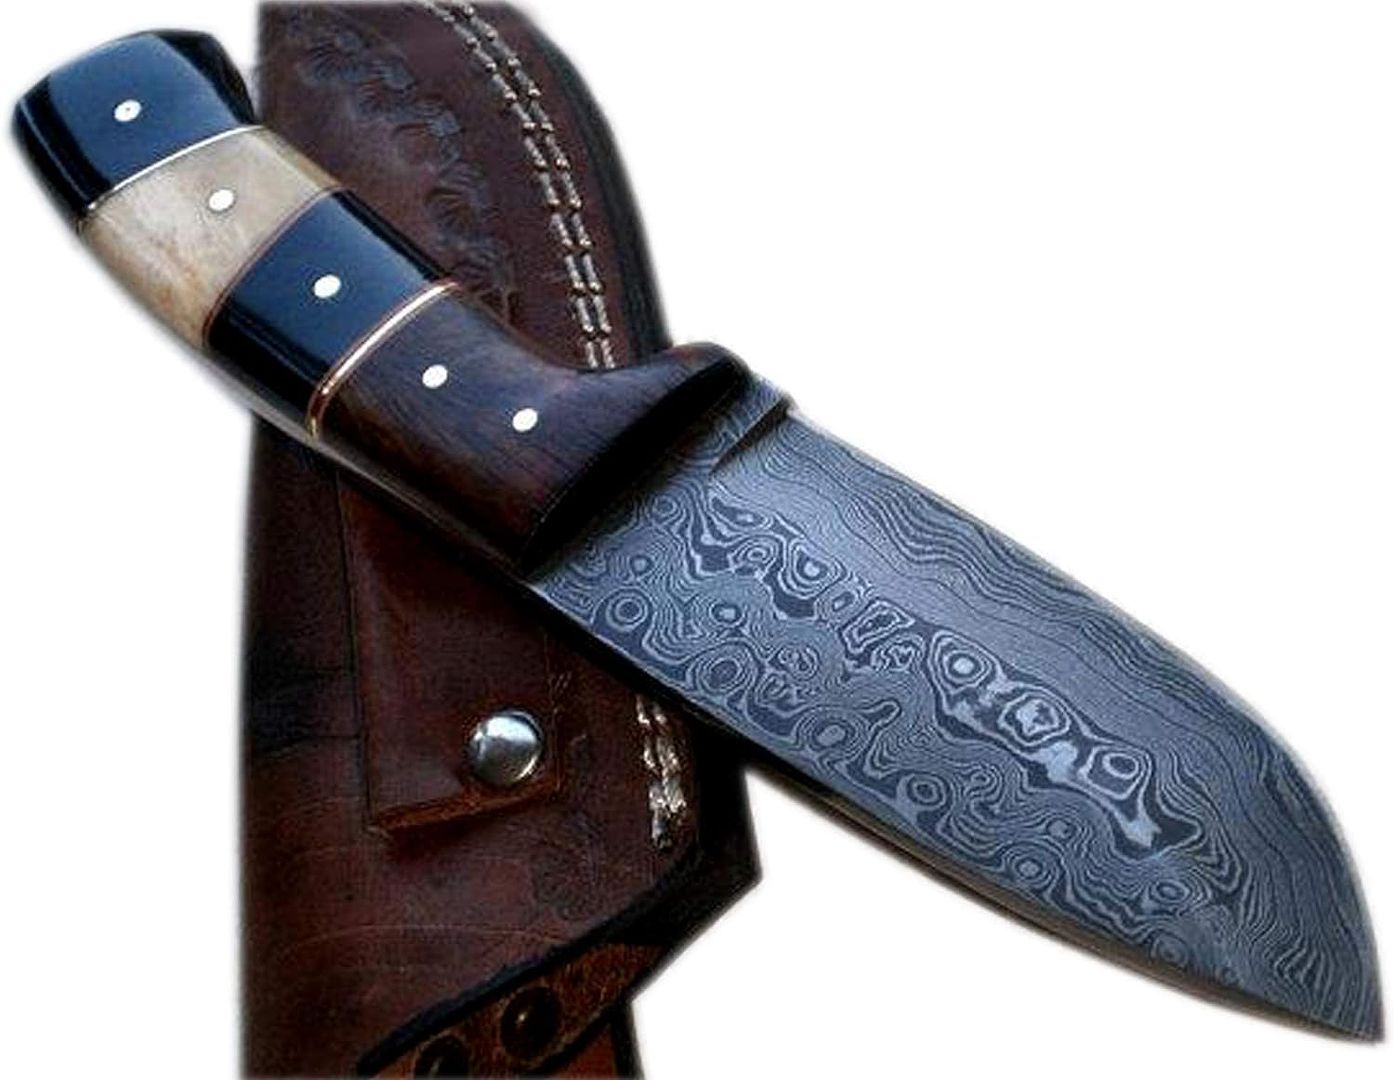 Poshland BC-1092 Handmade Damascus Steel 8 Inches Full Tang Skiner Knife